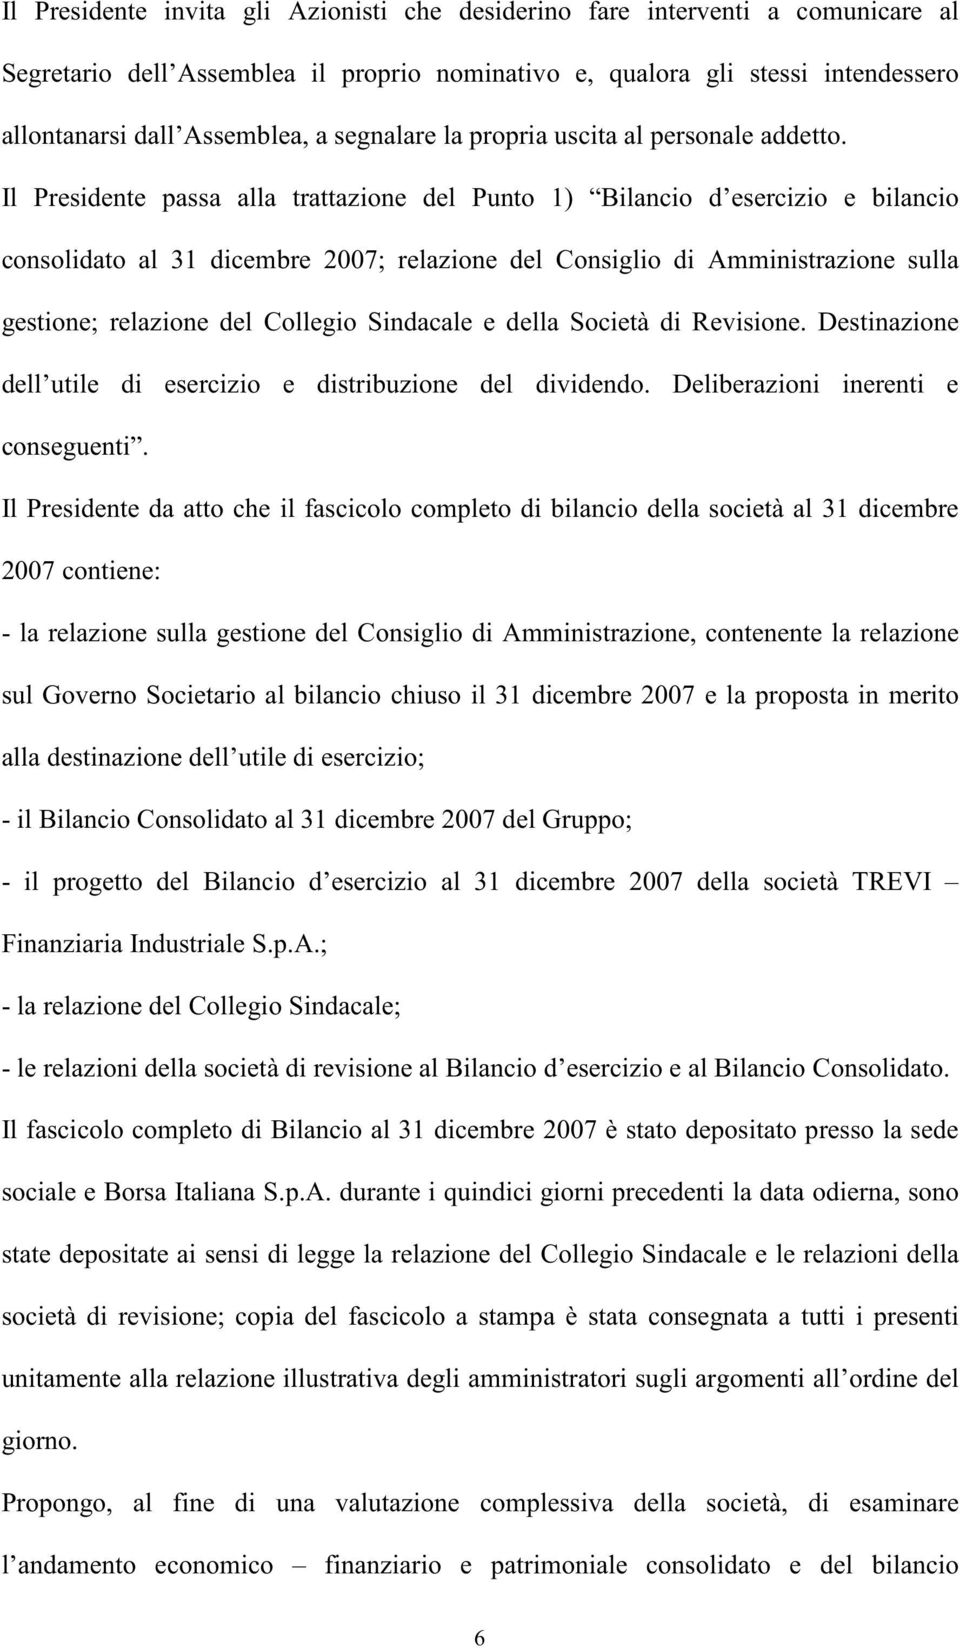 Il Presidente passa alla trattazione del Punto 1) Bilancio d esercizio e bilancio consolidato al 31 dicembre 2007; relazione del Consiglio di Amministrazione sulla gestione; relazione del Collegio